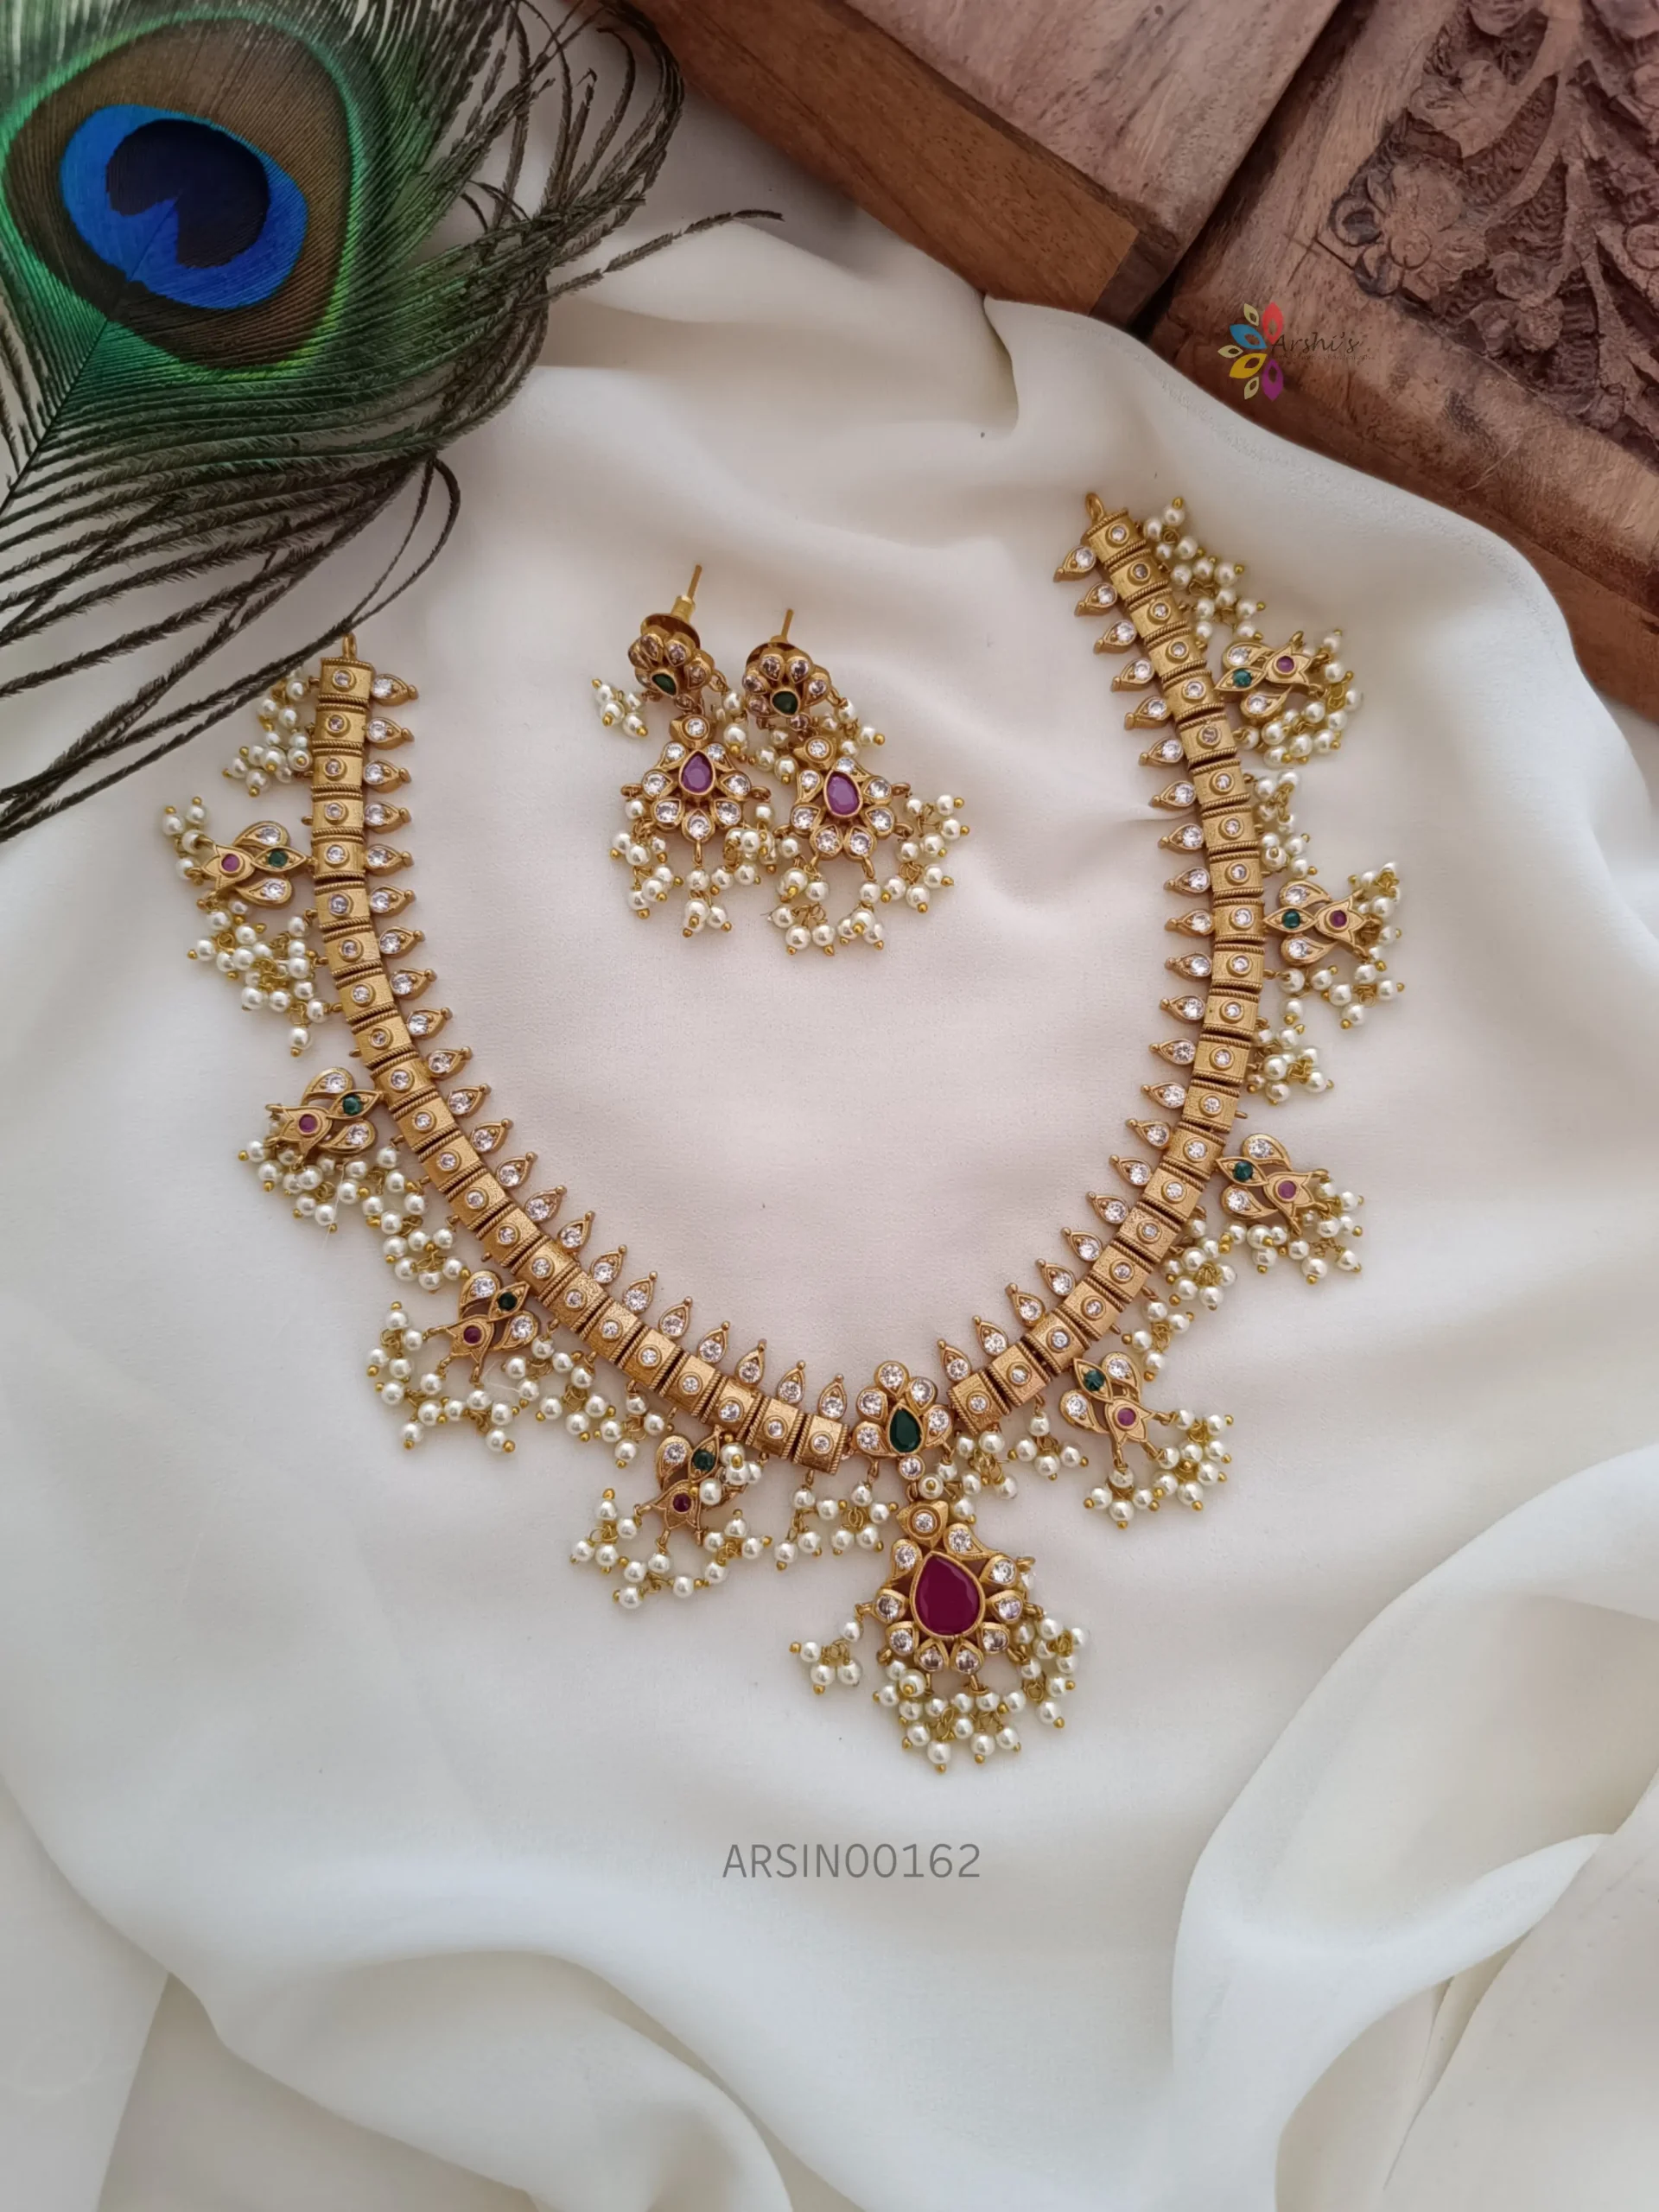 Beautiful guttapusalu AD necklace